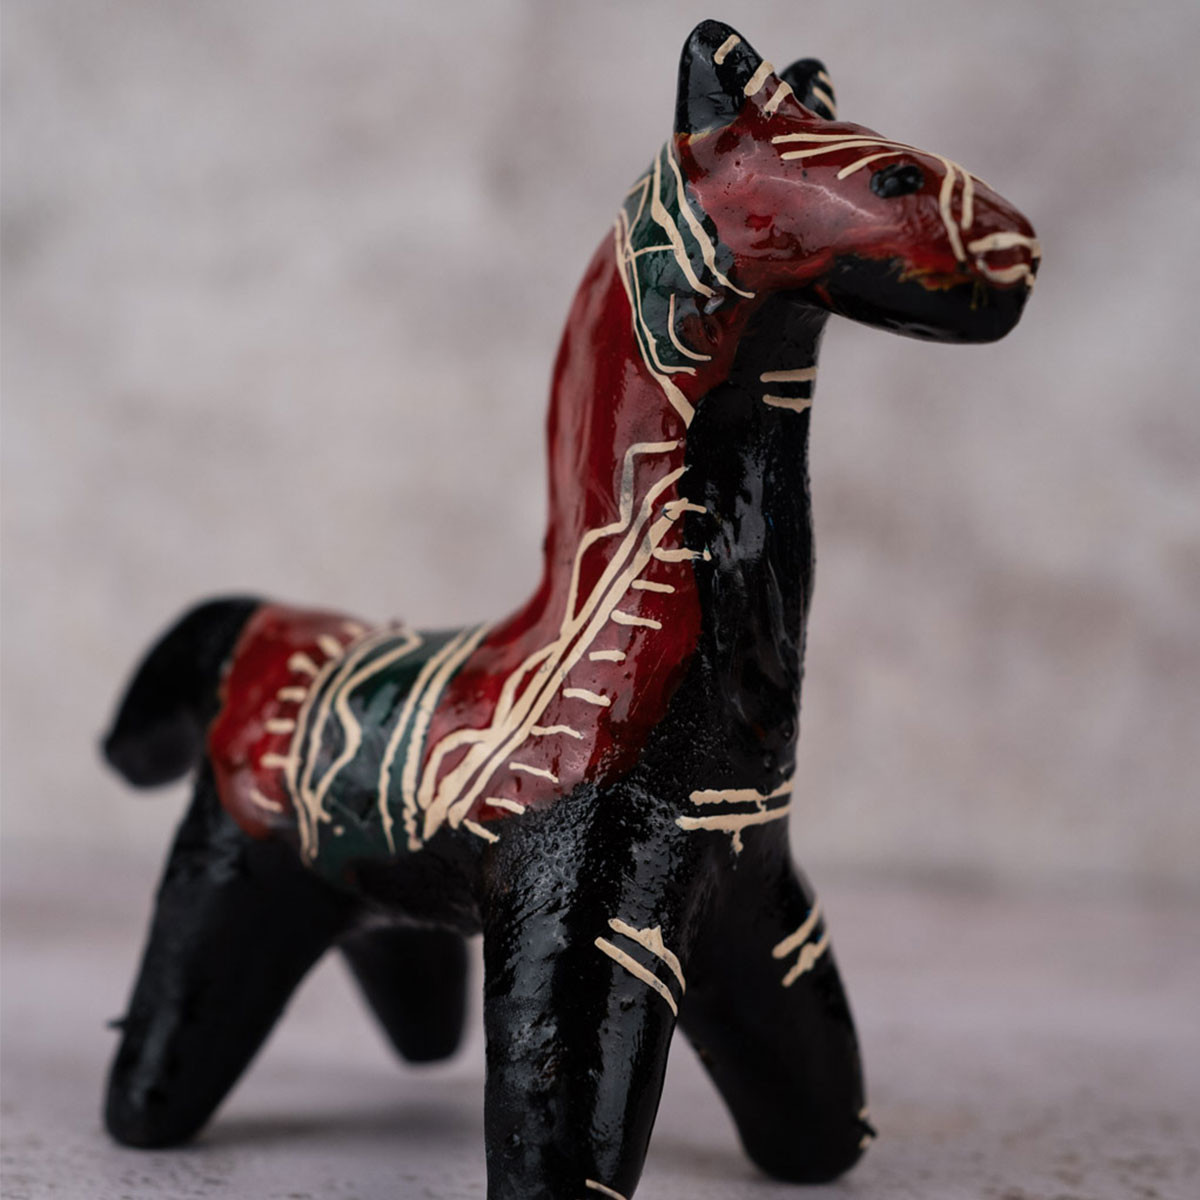 Galar Putul / Shellac Dolls- Elephant and Horse Set